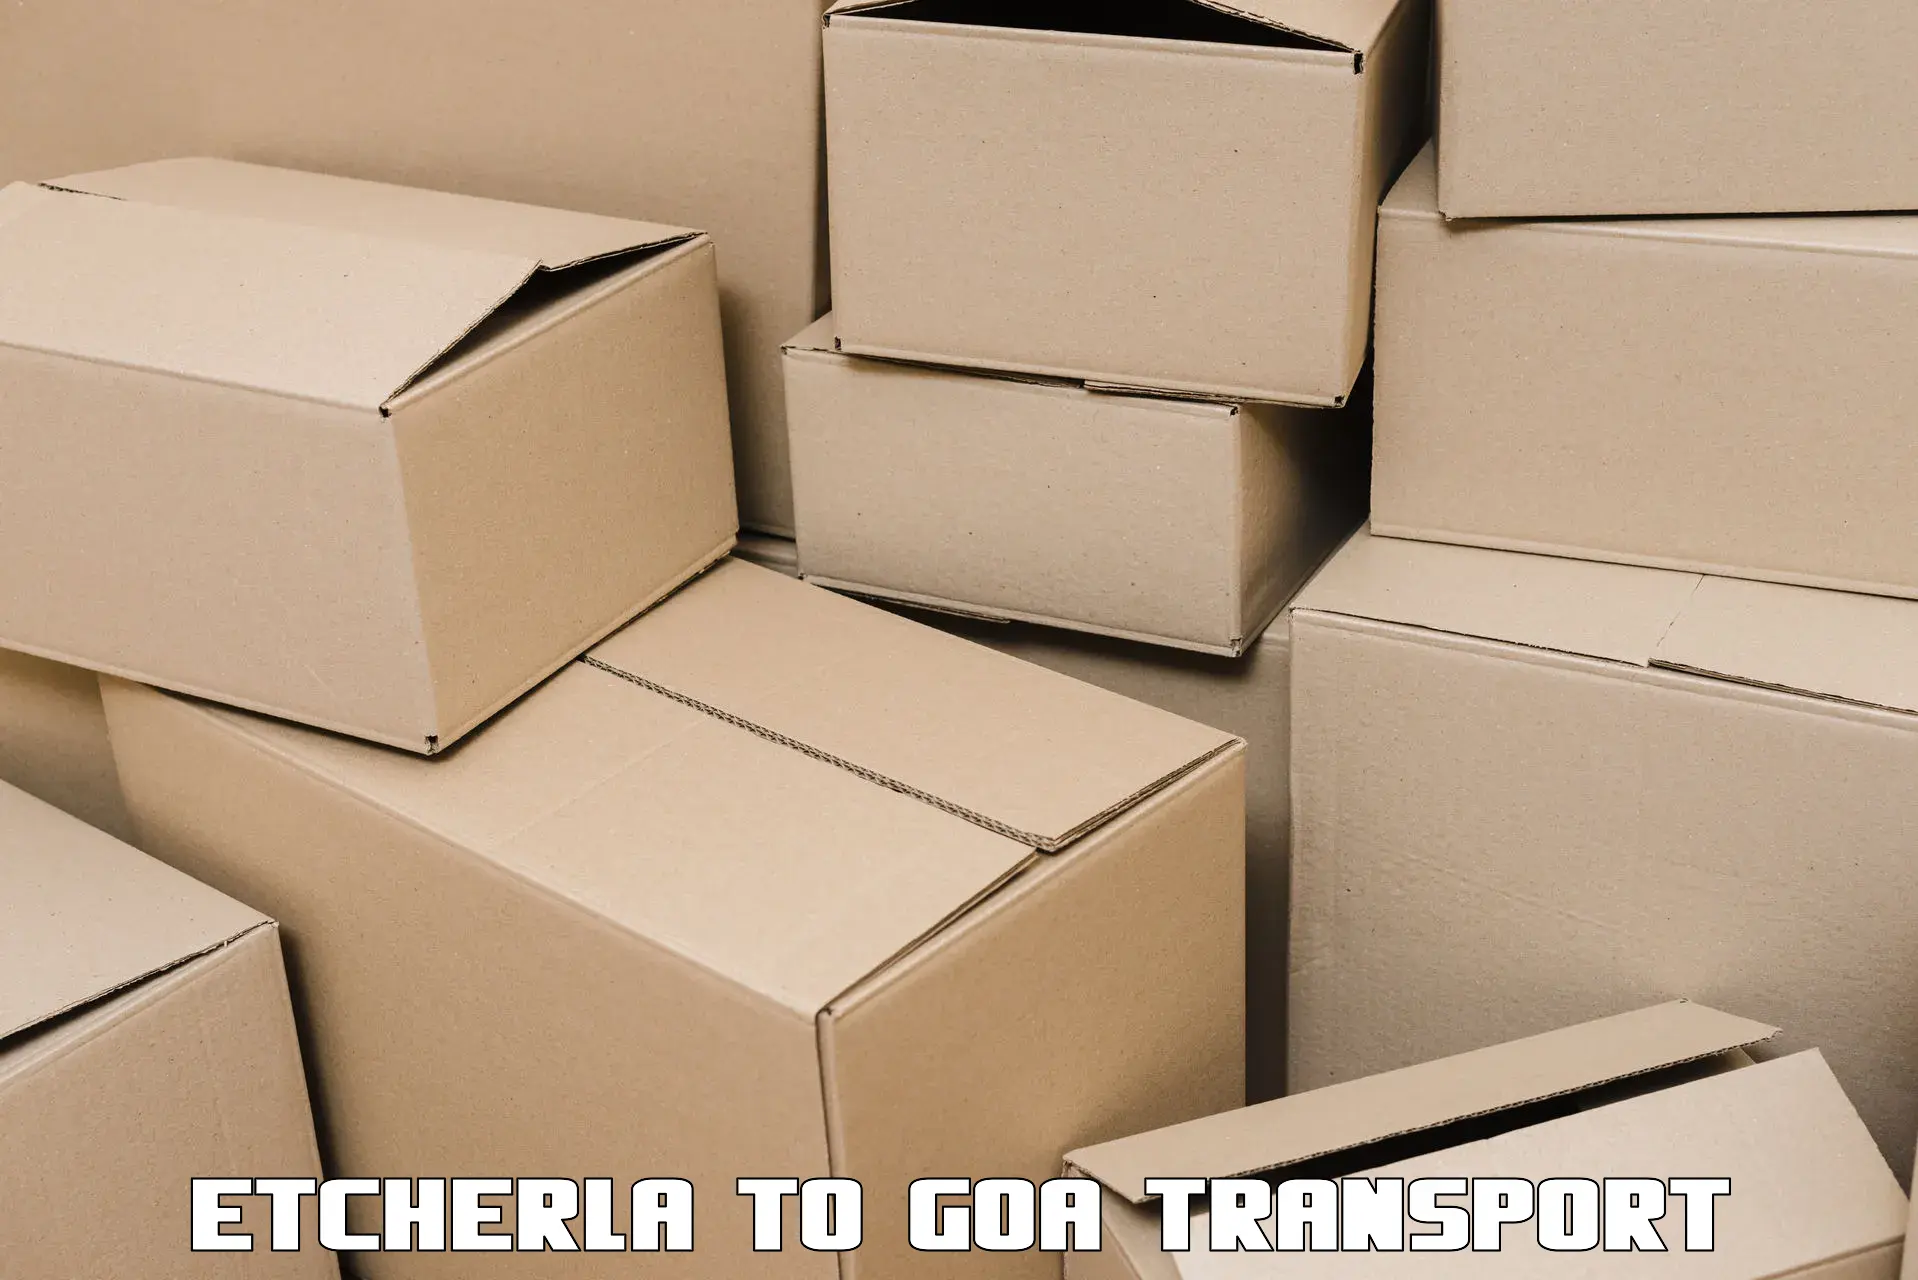 Daily parcel service transport Etcherla to South Goa